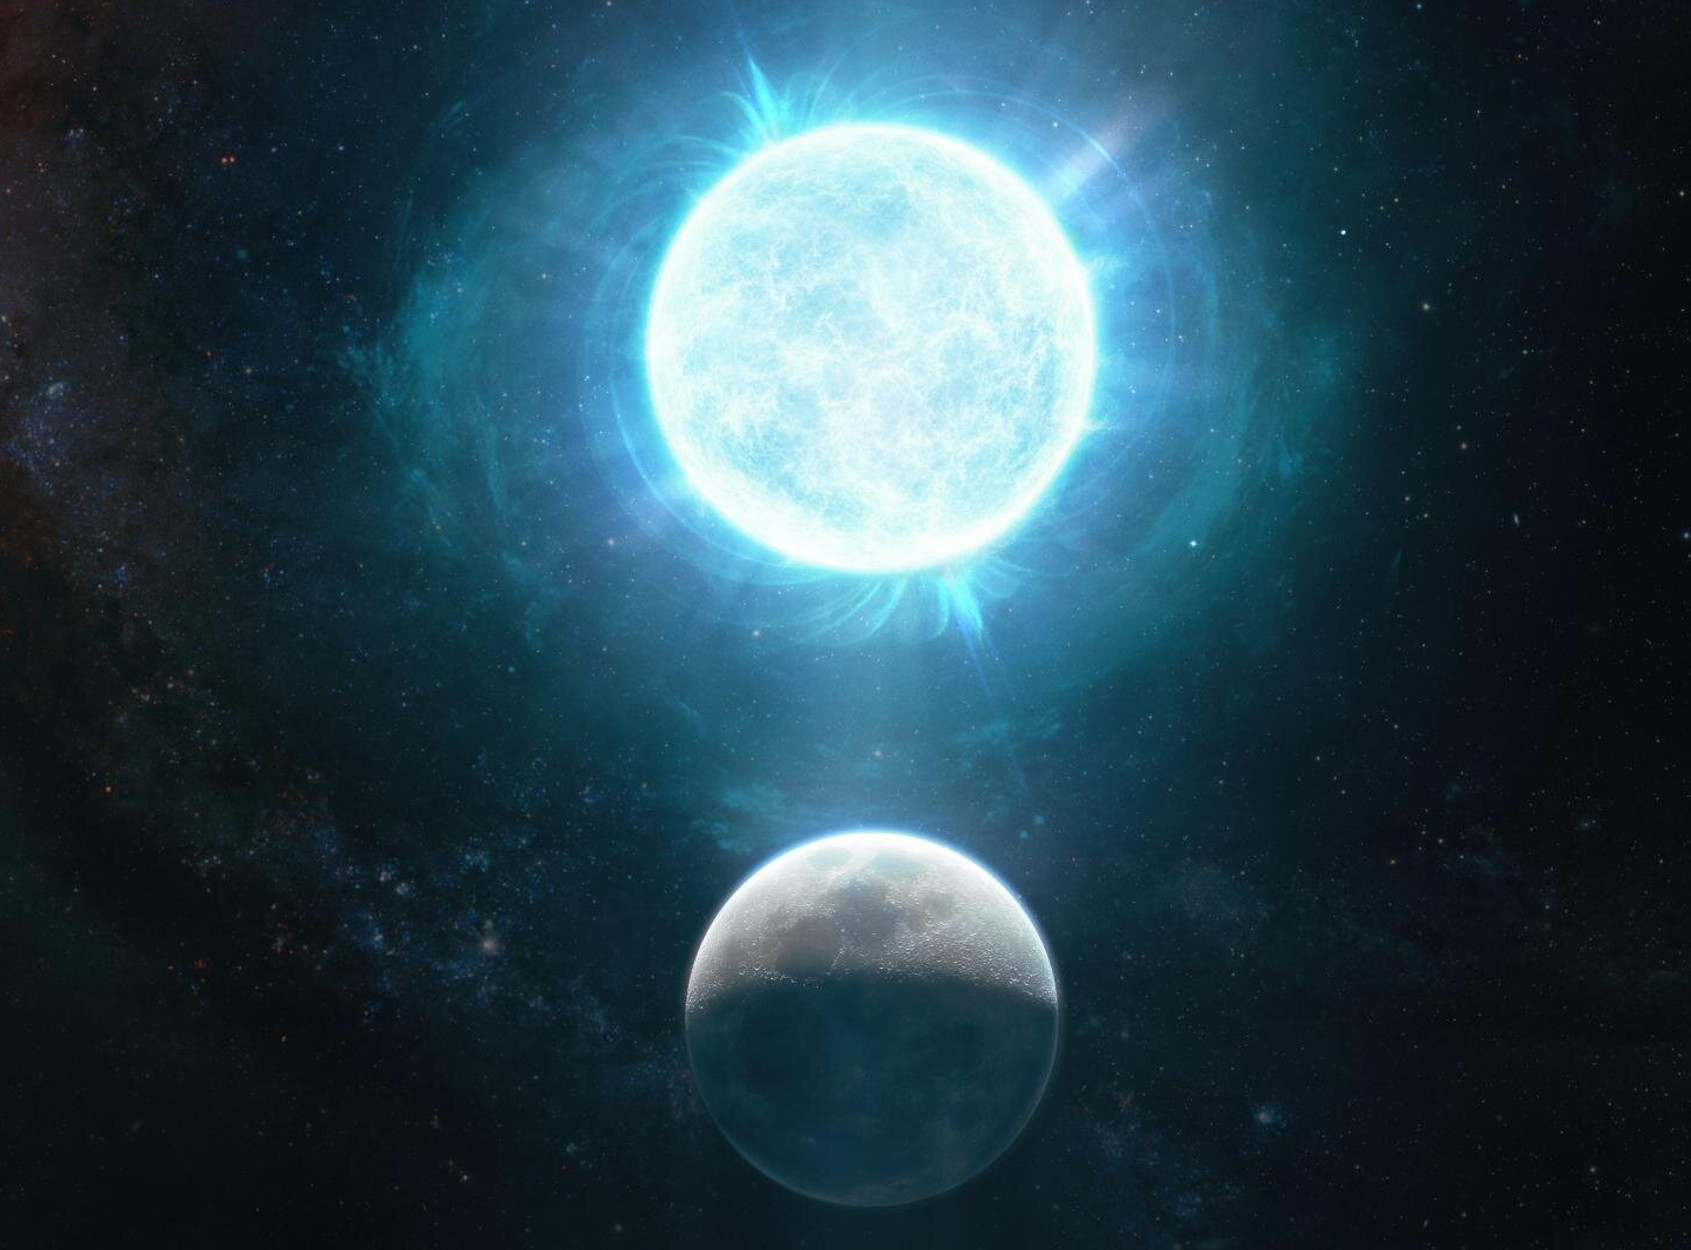 Βρέθηκε το μικρότερο άστρο – λευκός νάνος! Μέγεθος σελήνης και μάζα… μεγαλύτερη απ’ τον ήλιο (pic)